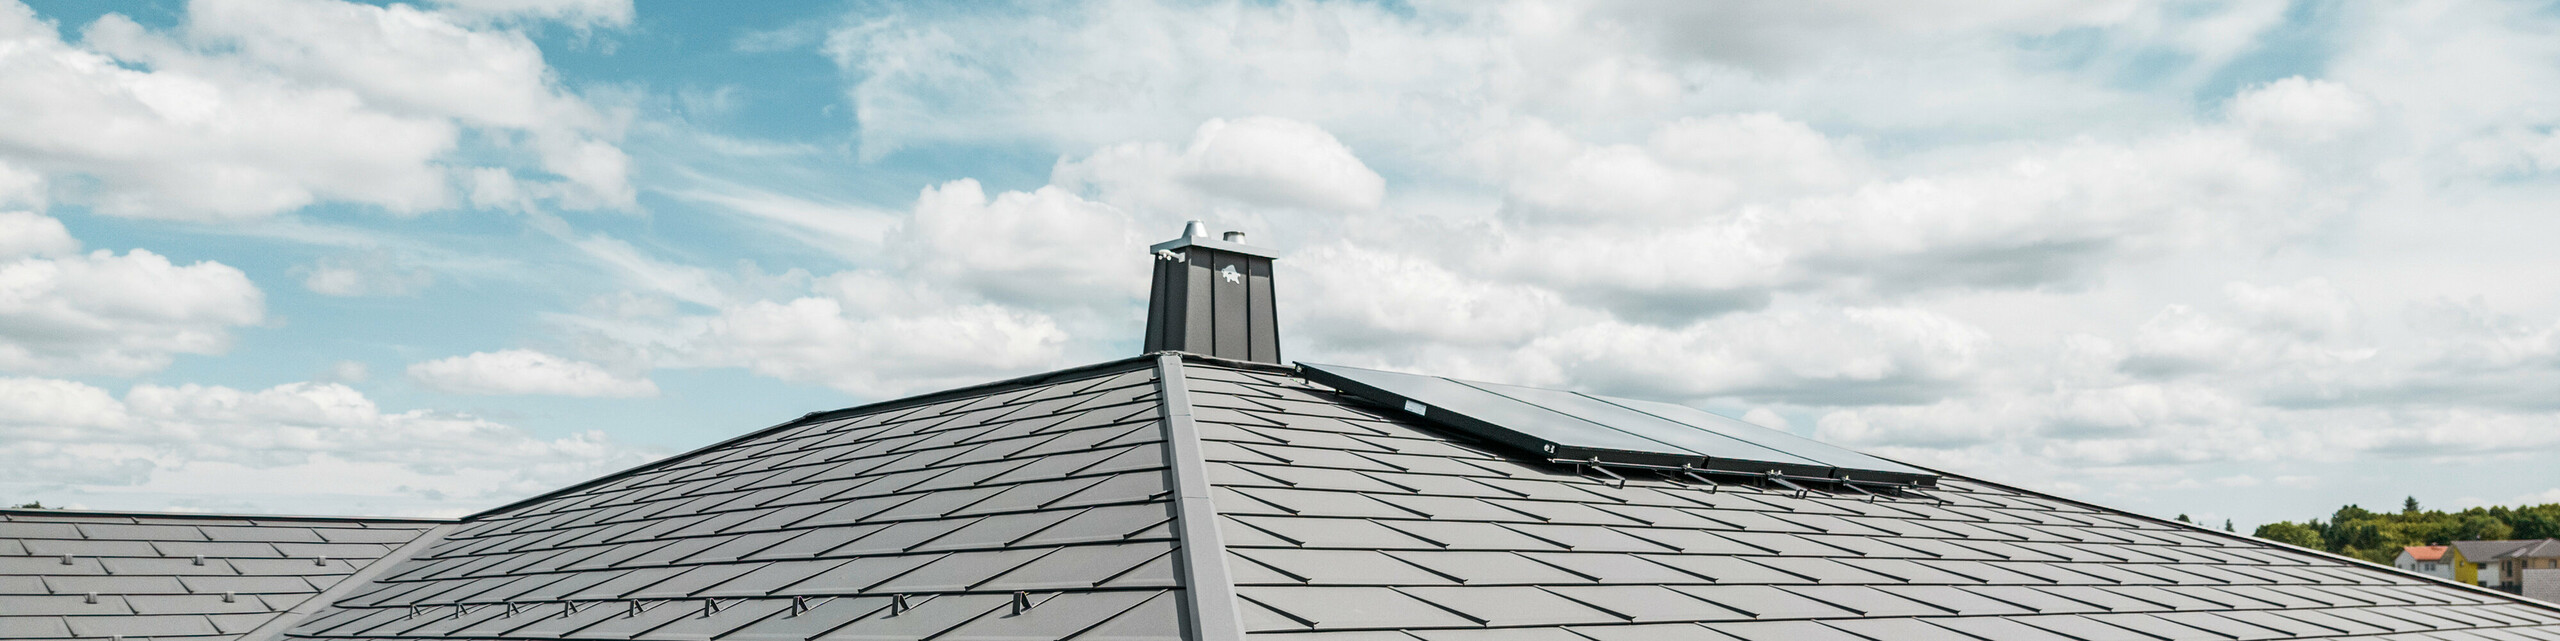 Detailansicht eines PREFA Aluminiumdachs auf einem Einfamilienhaus in Illmenau, Thürigen. Das Dach wurde überwiegend mit PREFA Dachplatten R.16 in P.10 Dunkelgrau eingedeckt. Die kleinformatigen Aluminiumdachplatten wurden fachmännisch verlegt und verleihen dem Bungalow einen modernen Look. Das Bild zeigt die Präzision des PREFA Dachsystems, inklusive der Schneefangsysteme, die für zusätzliche Sicherheit sorgen. Die harmonische Integration der Hängerinnen und Ablaufrohre des PREFA Dachentwässerungssystems betont die ästhetische und funktionale Qualität des Gebäudes. Am linken Bildrand sind Stehfalzstreifen zu sehen, welche mit dunkelgrauem PREFALZ auf der direkt anschließenden Garage montiert wurden.